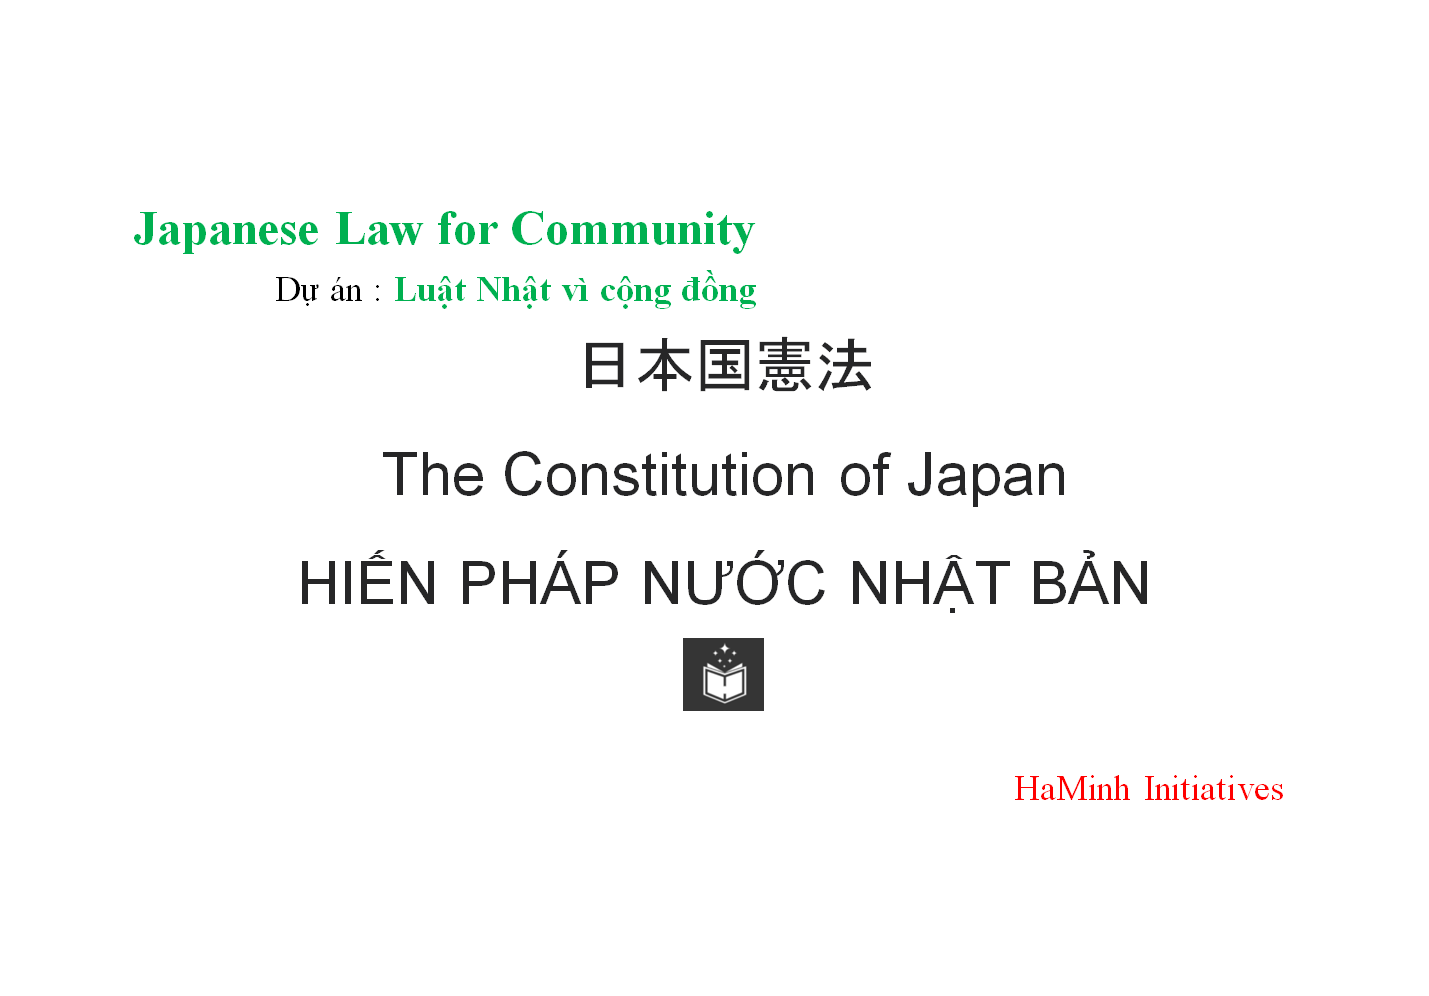 日本国憲法
The Constitution of Japan
HIẾN PHÁP NƯỚC NHẬT BẢN